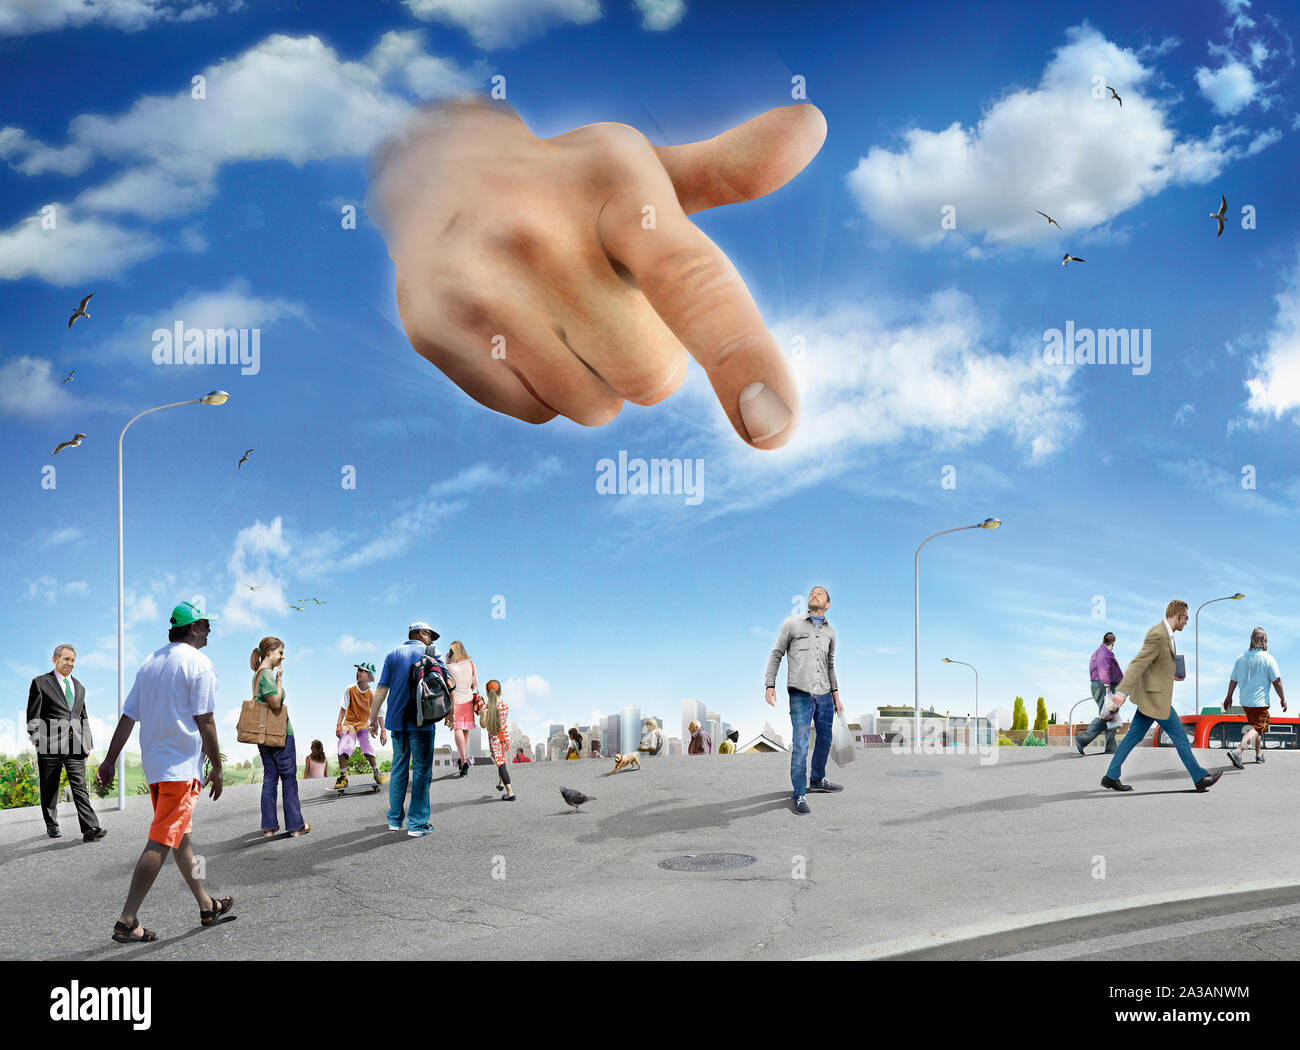 Gran mano en sky apuntando al hombre de pie de la multitud Foto de stock